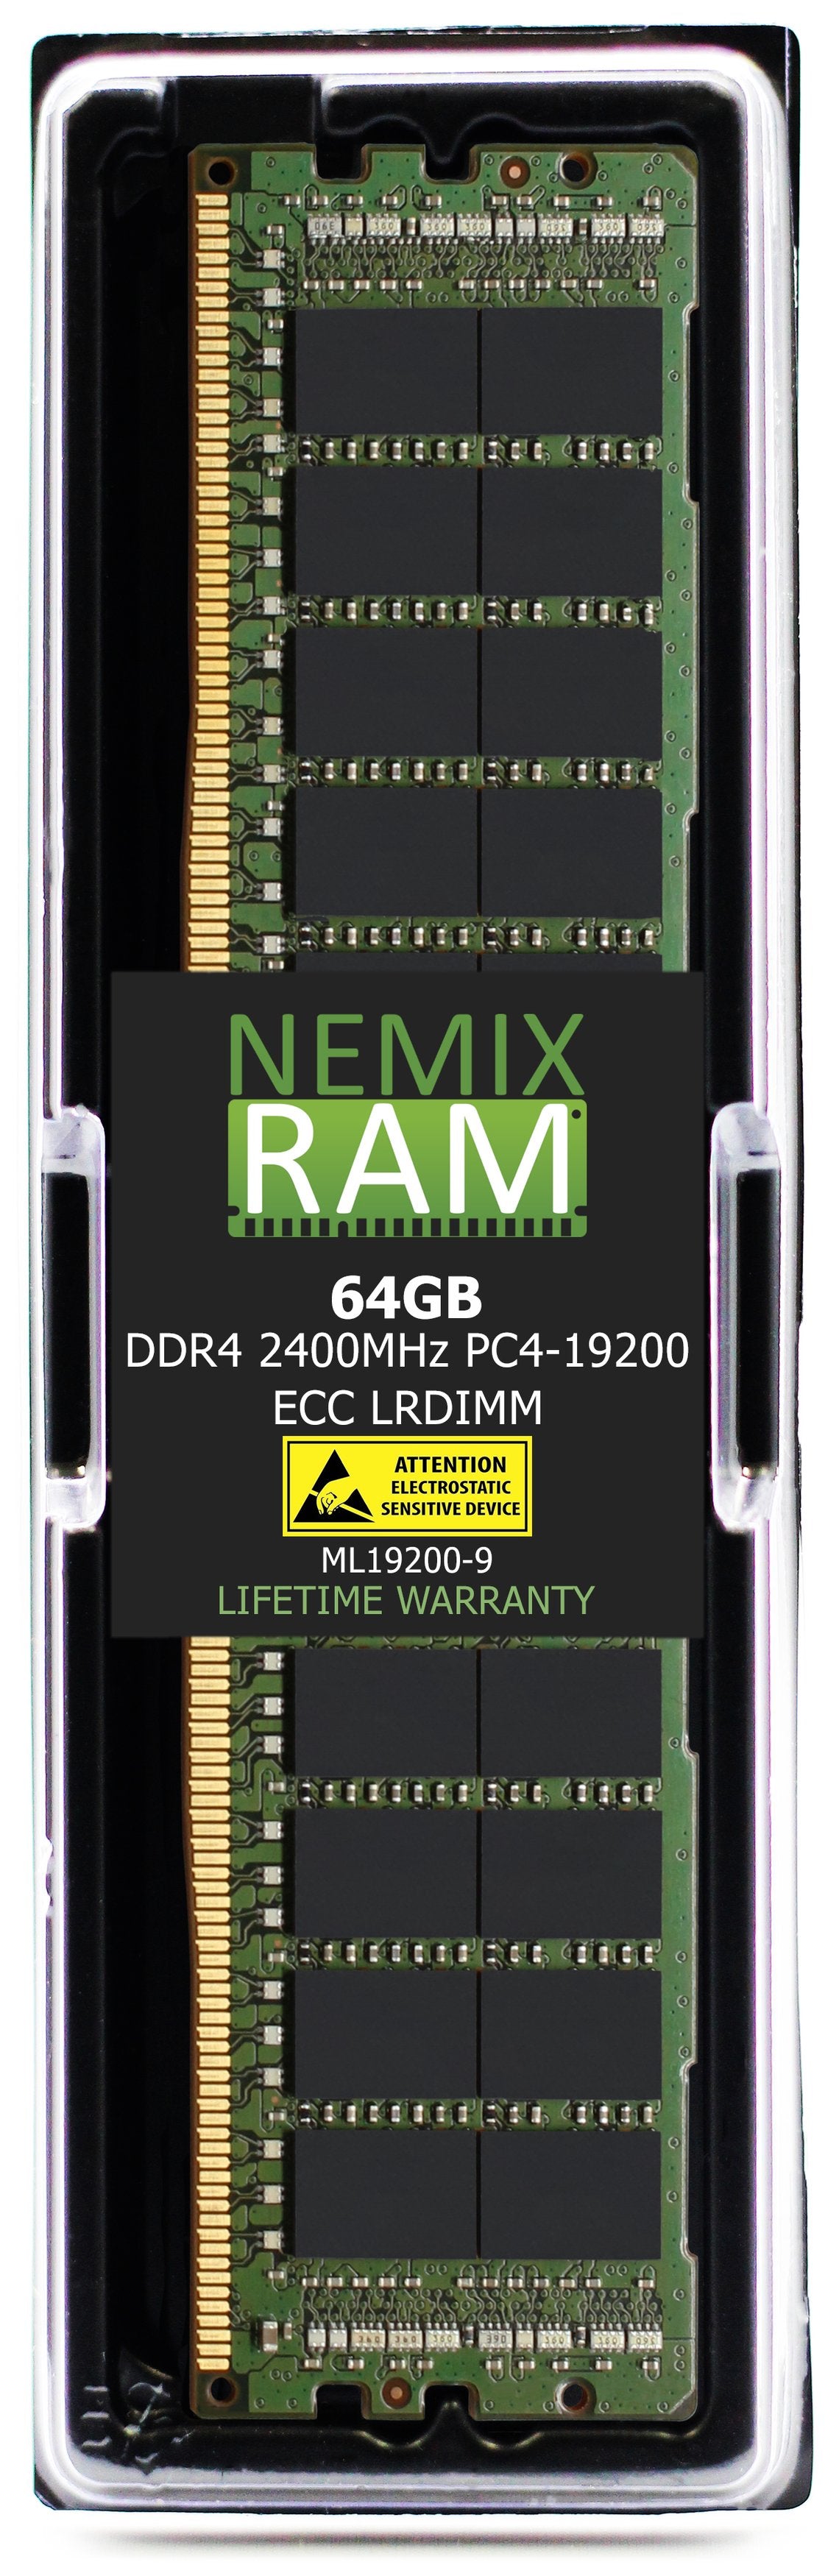 64GB DDR4 2400MHZ PC4-19200 LRDIMM Compatible with Supermicro MEM-DR464L-SL02-LR24